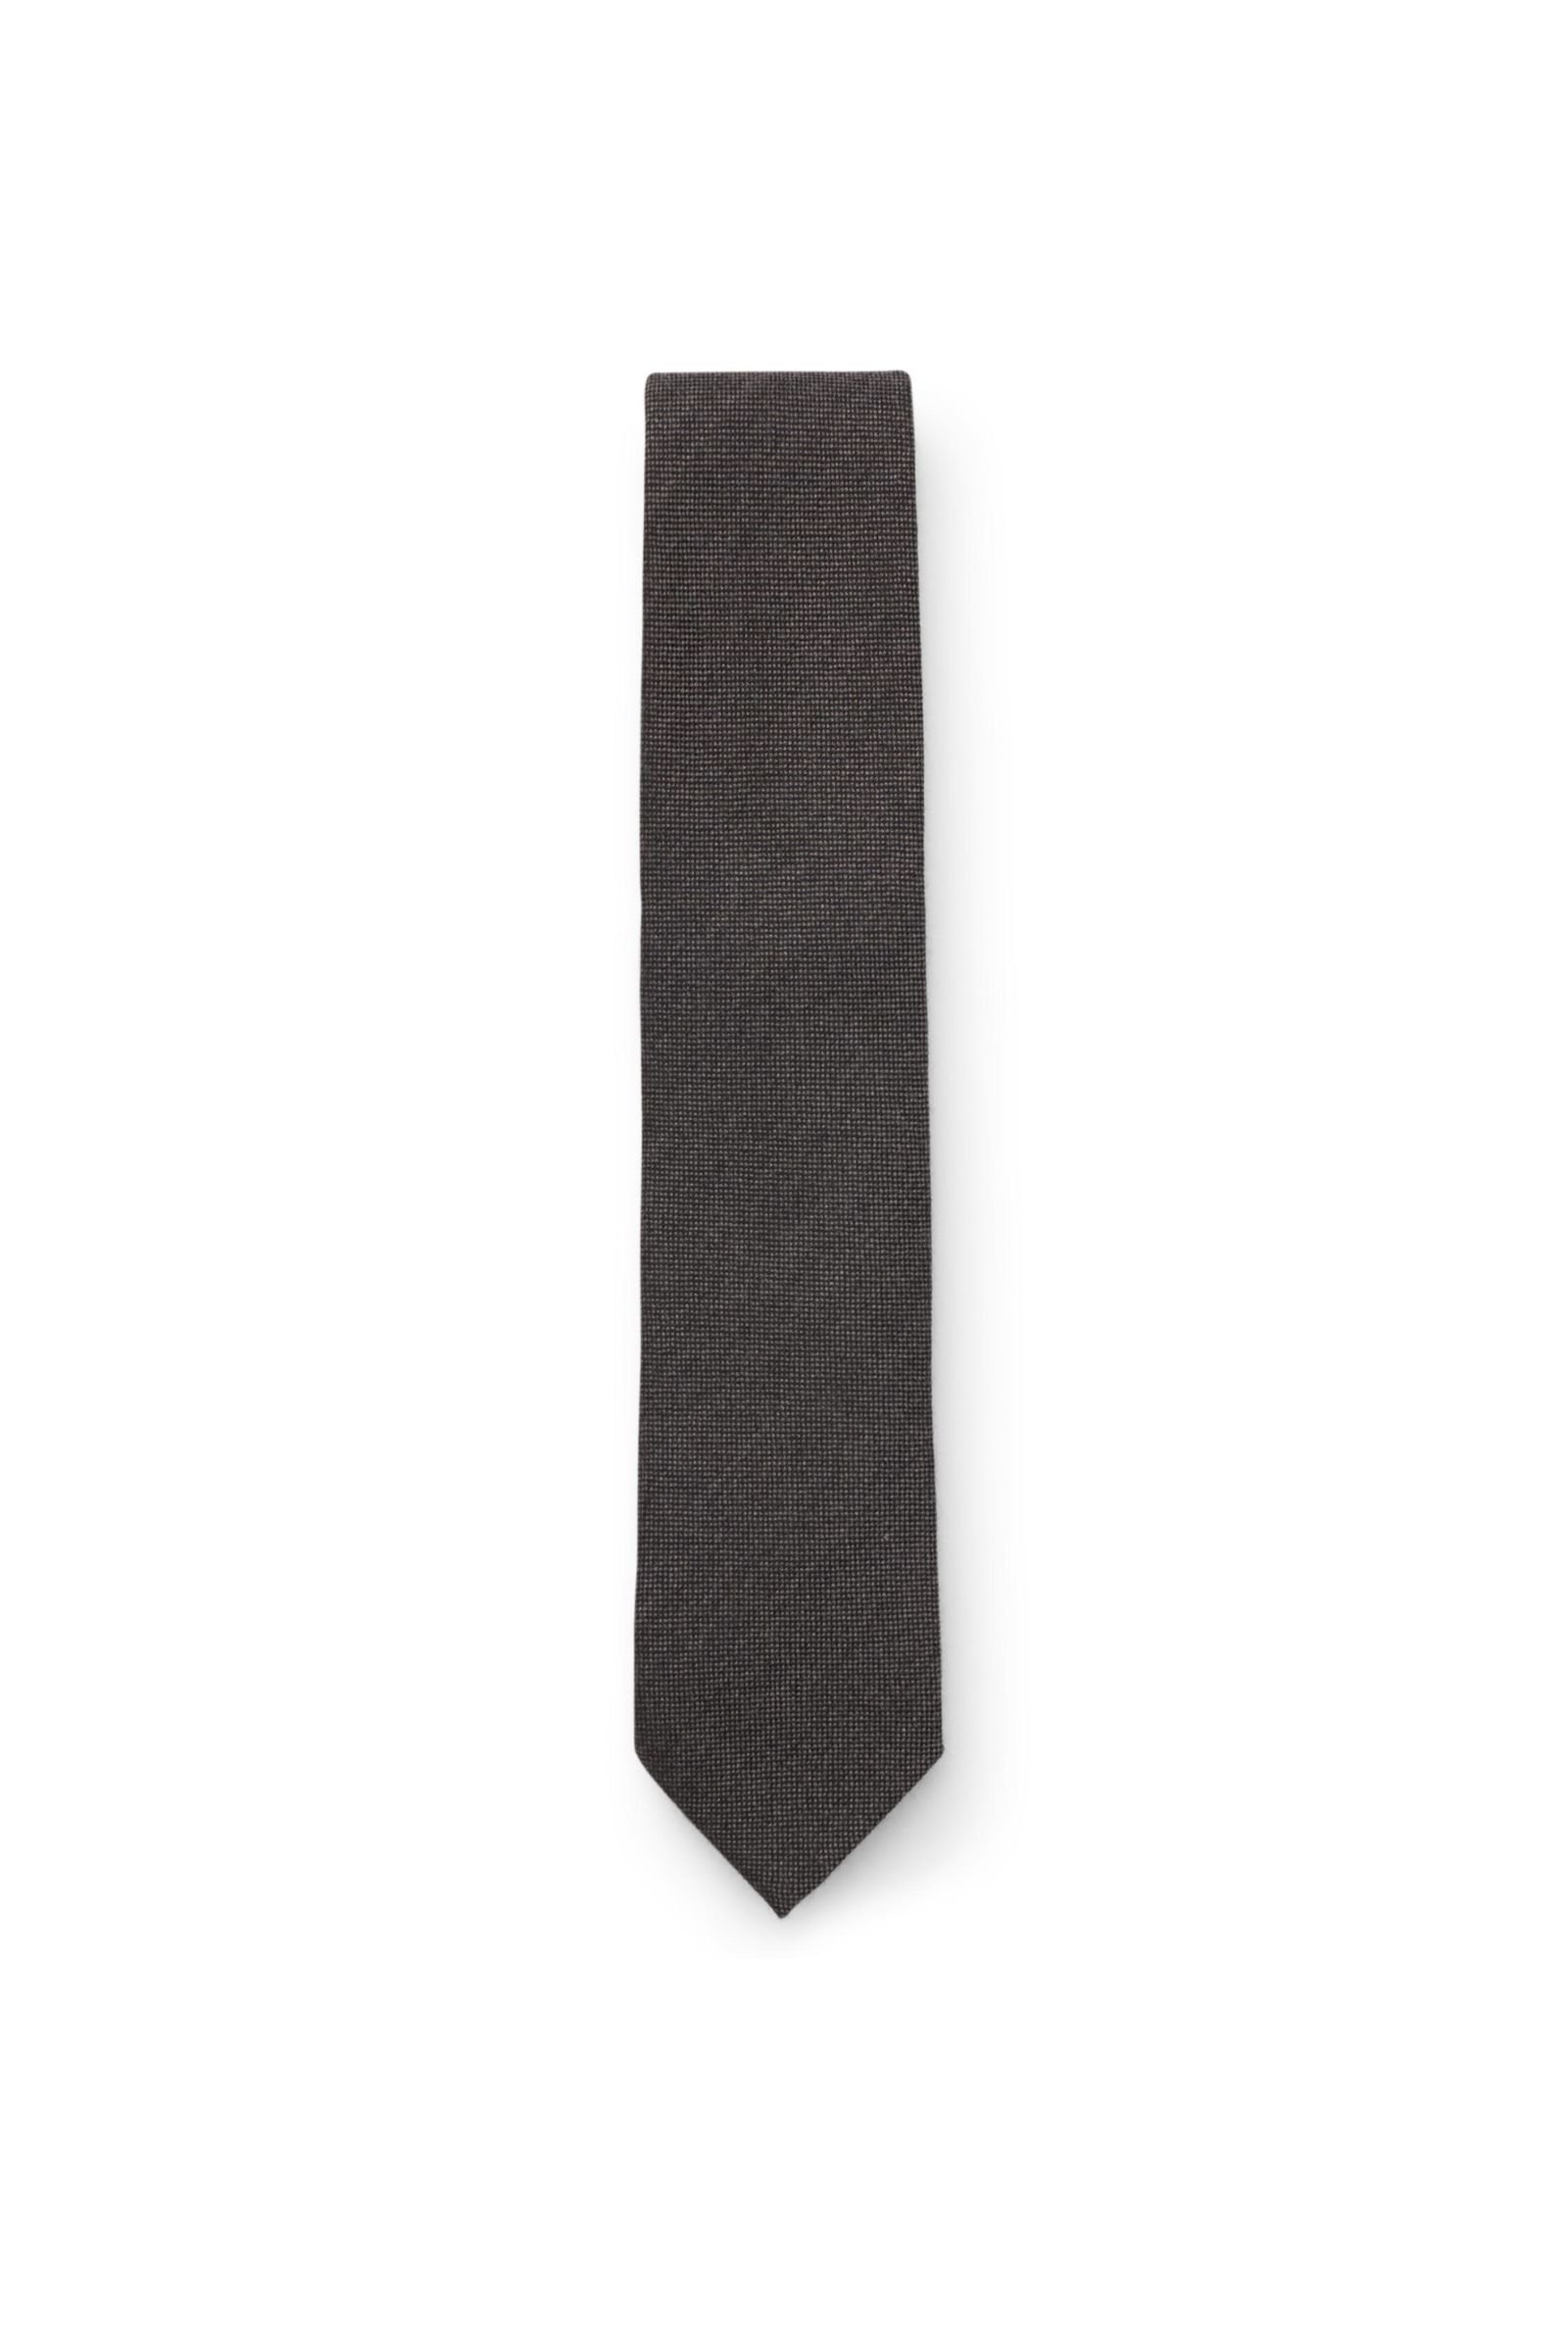 Cashmere tie dark grey